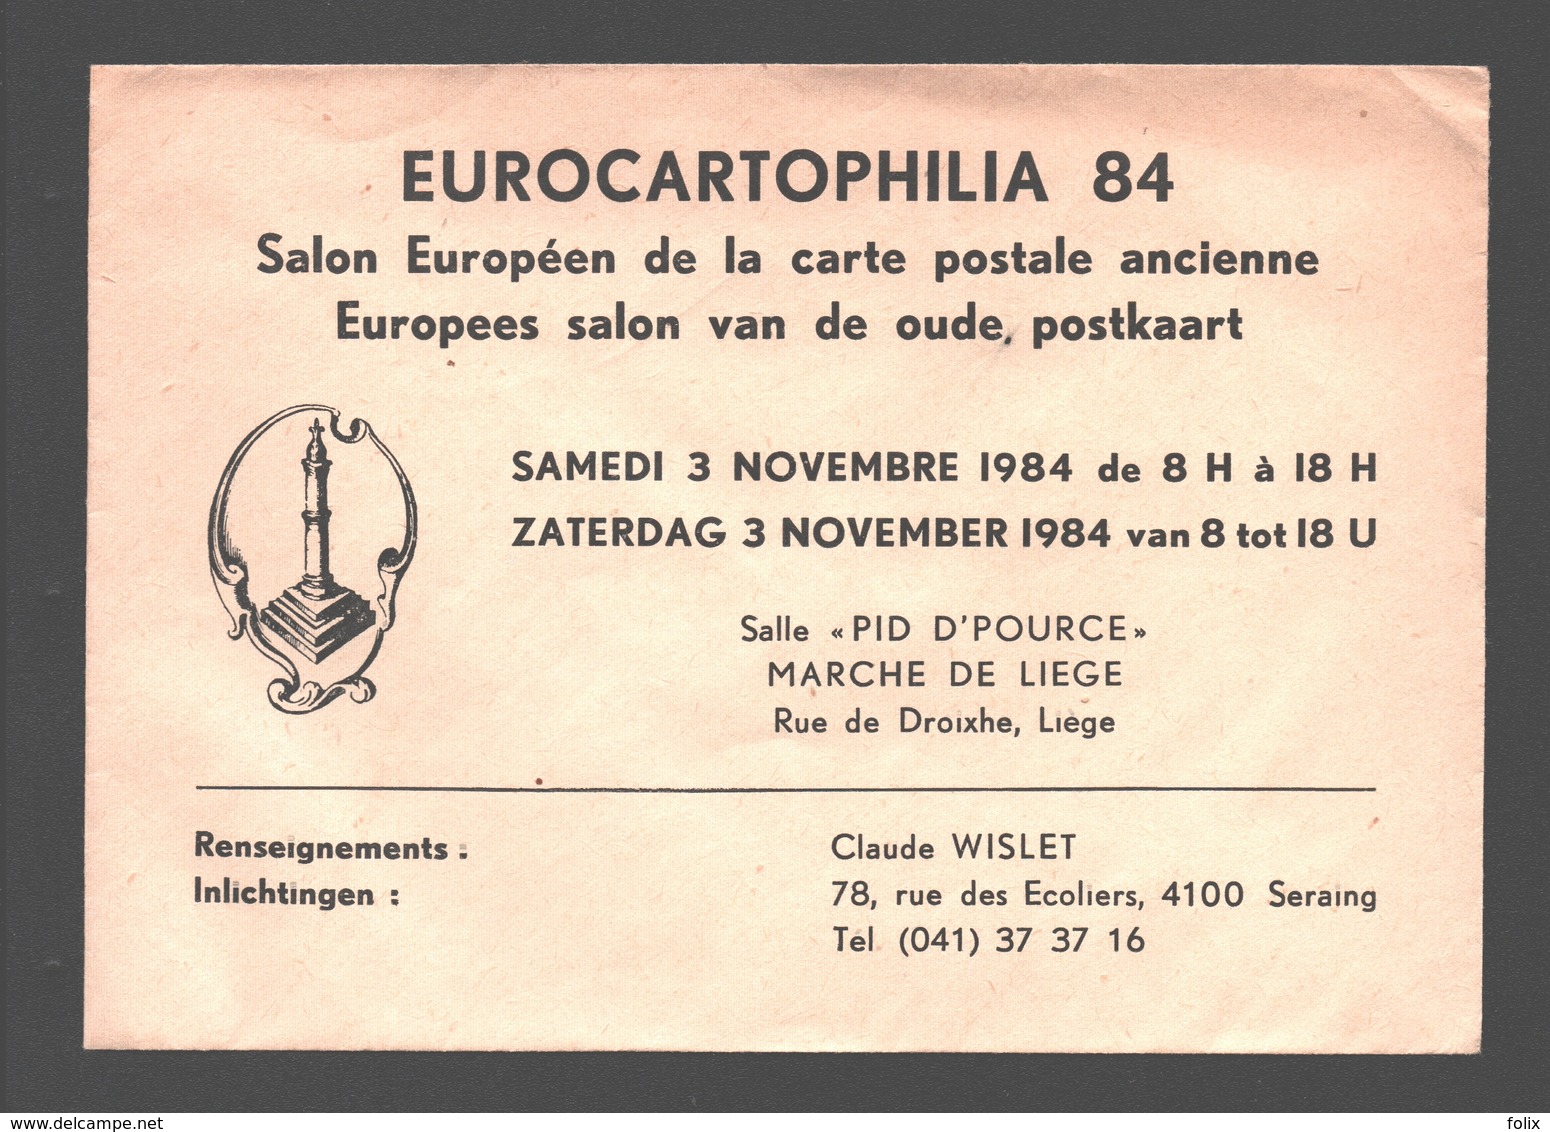 Cartophilie - Envelop/ Enveloppe Publicitaire - Eurocartophilia 84 - Liège - Salon Européen De La Carte Postale Ancienne - Collector Fairs & Bourses